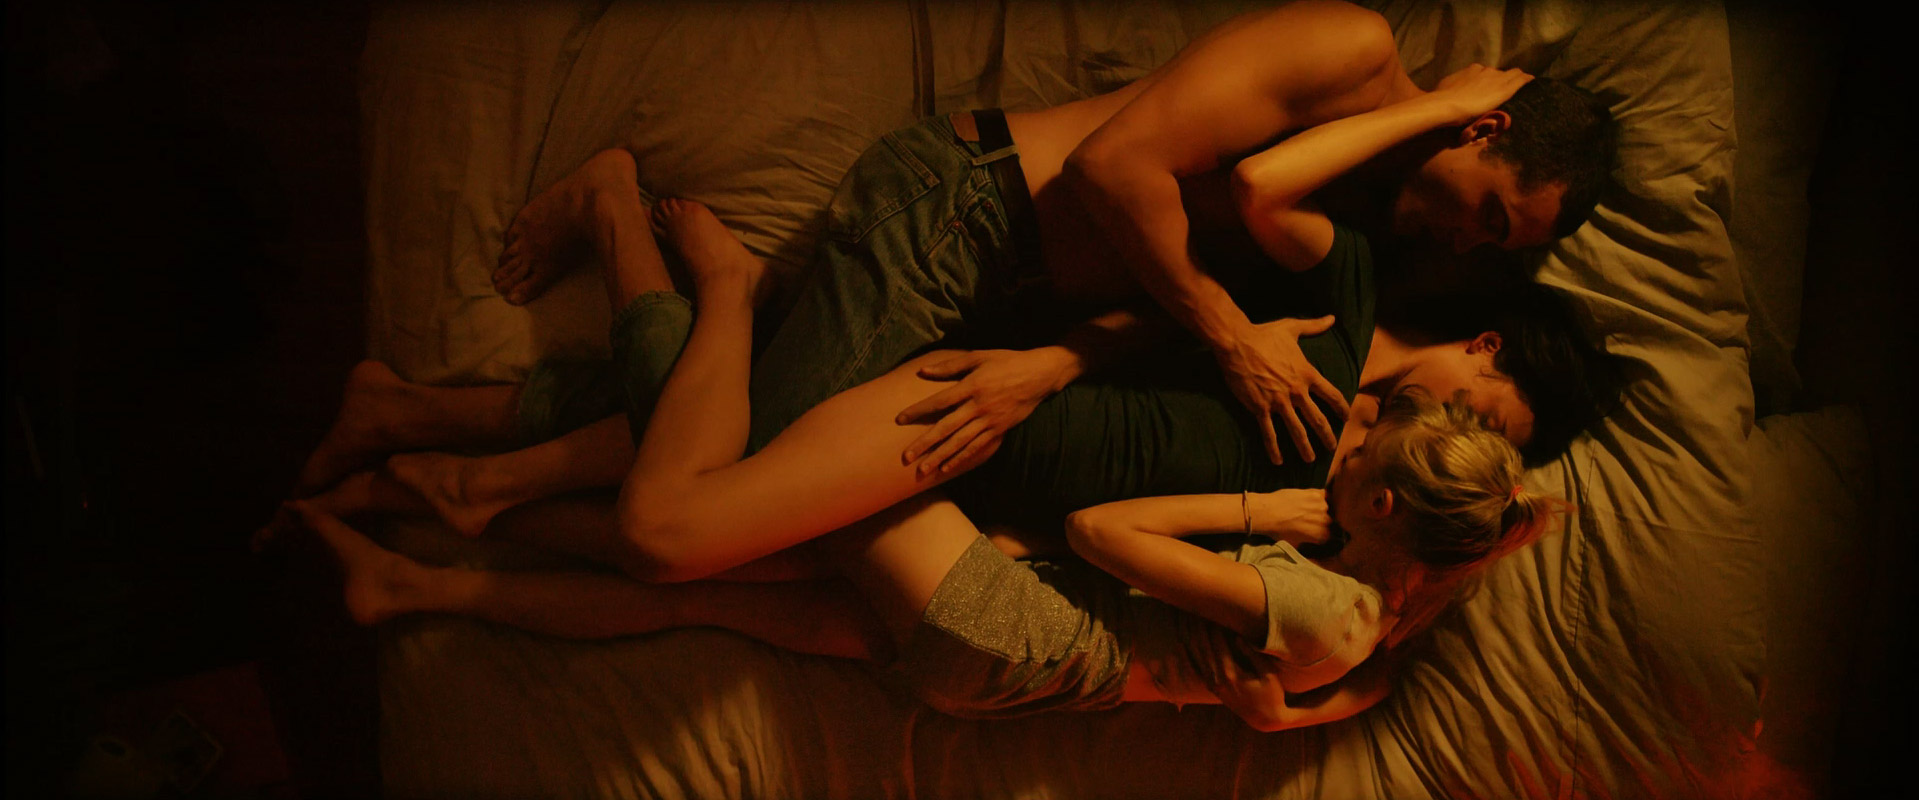 Love 2015 threesome scene